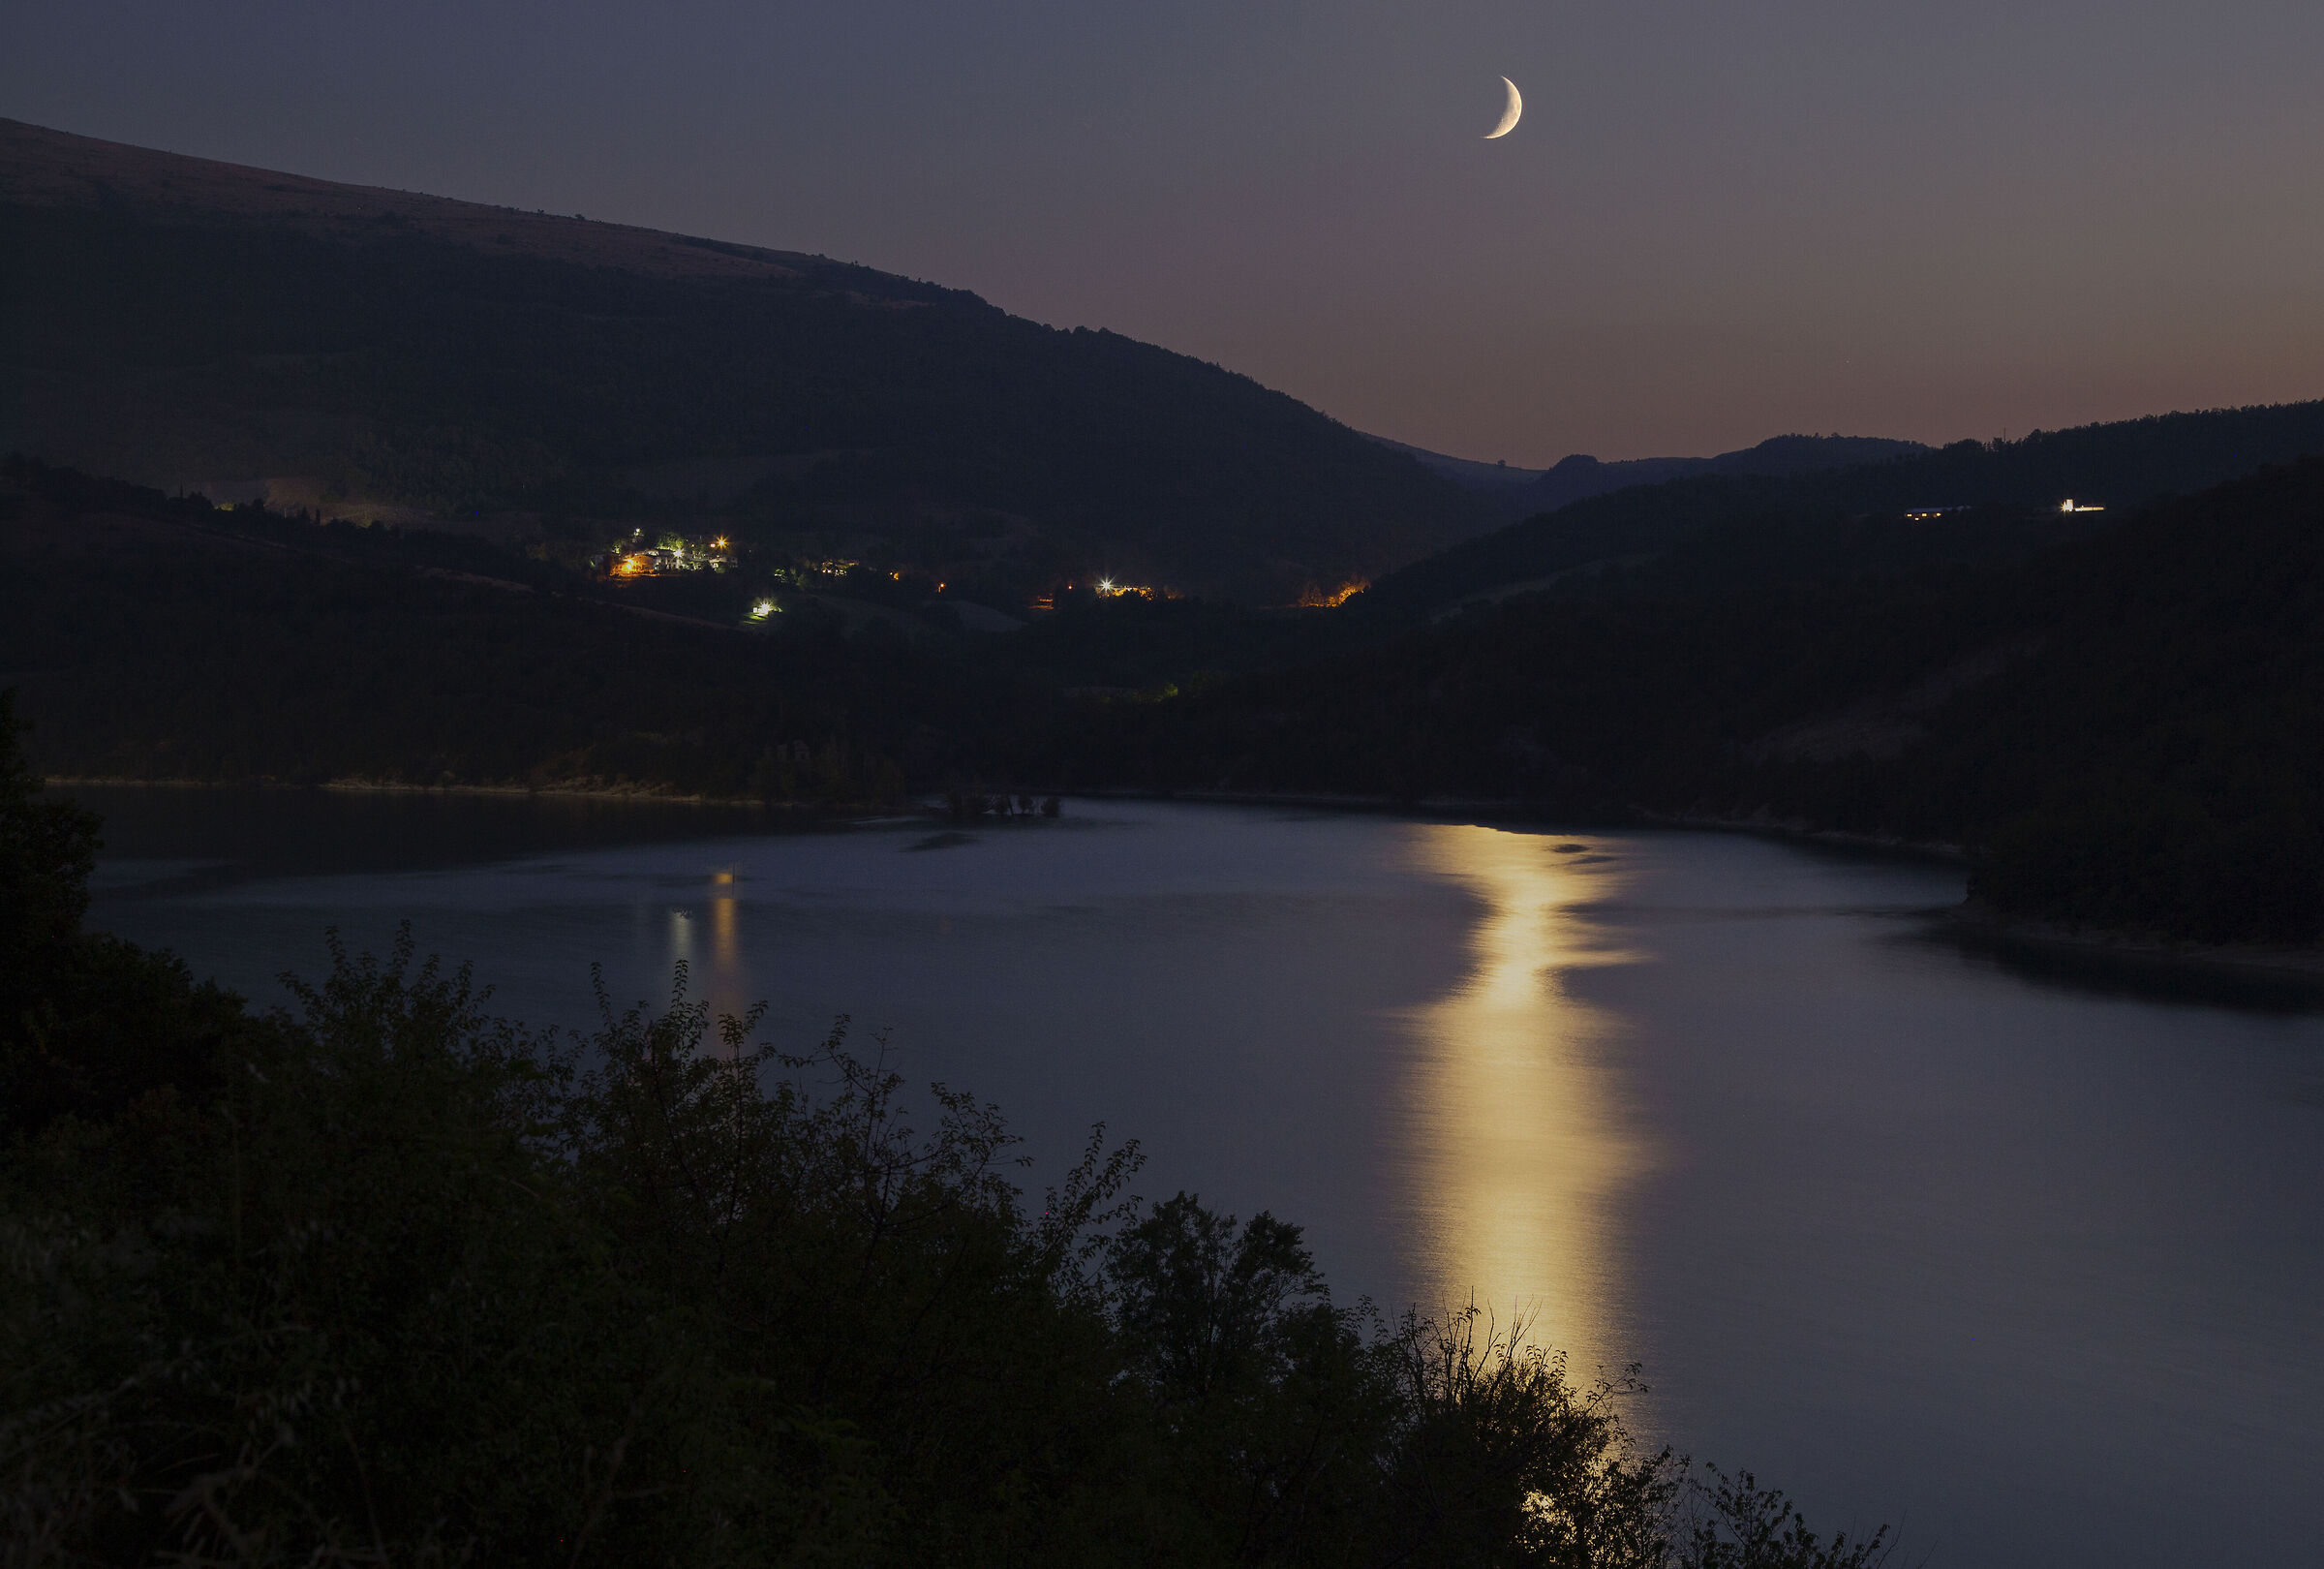 Uno spicchio di Luna crescente si riflette sul lago .....